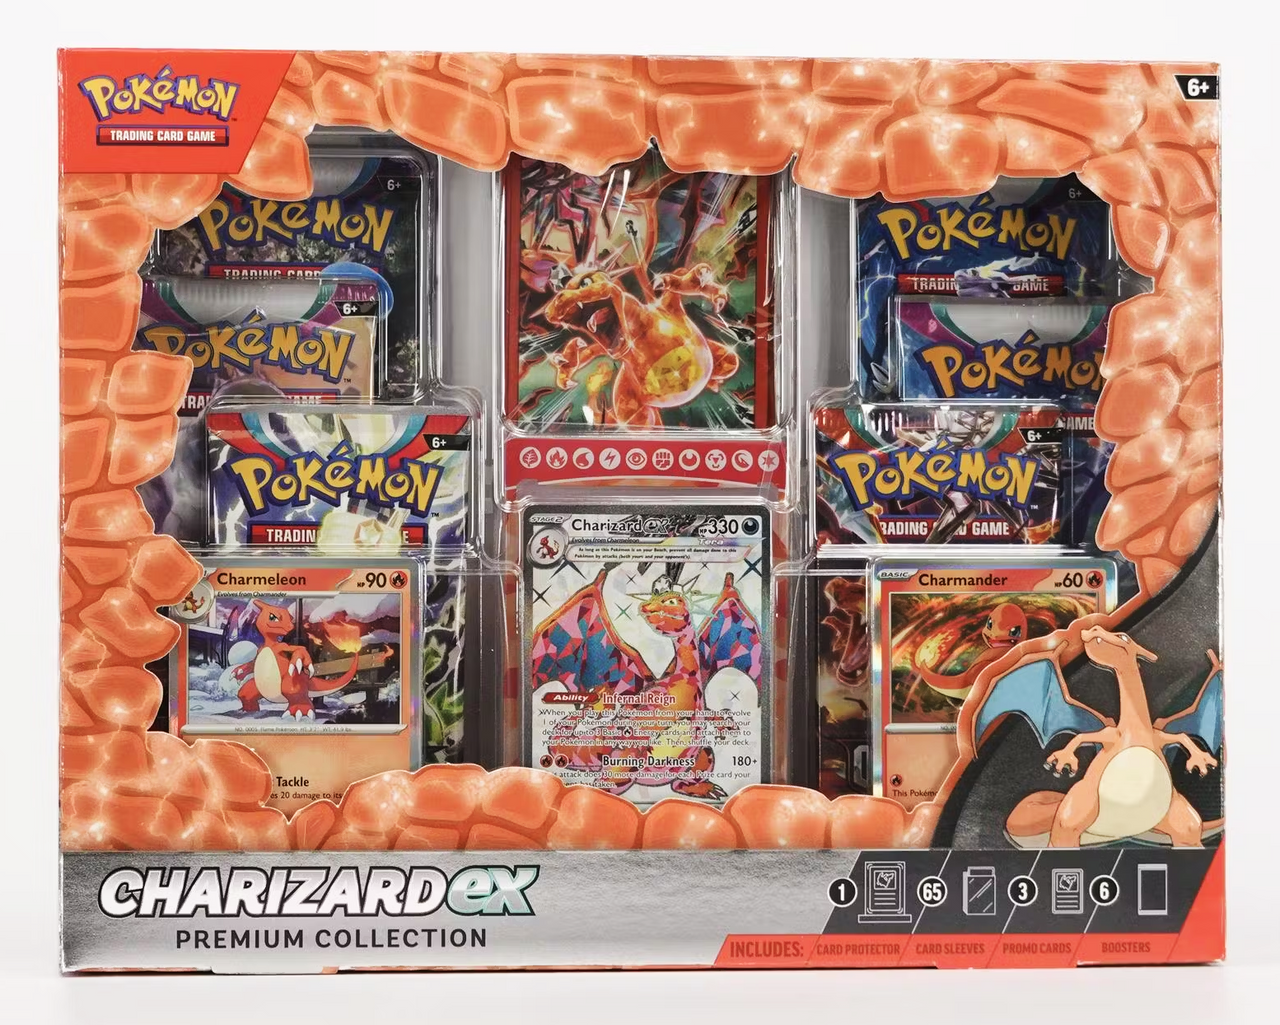 Pokemon Charizard EX Premium Collection Box